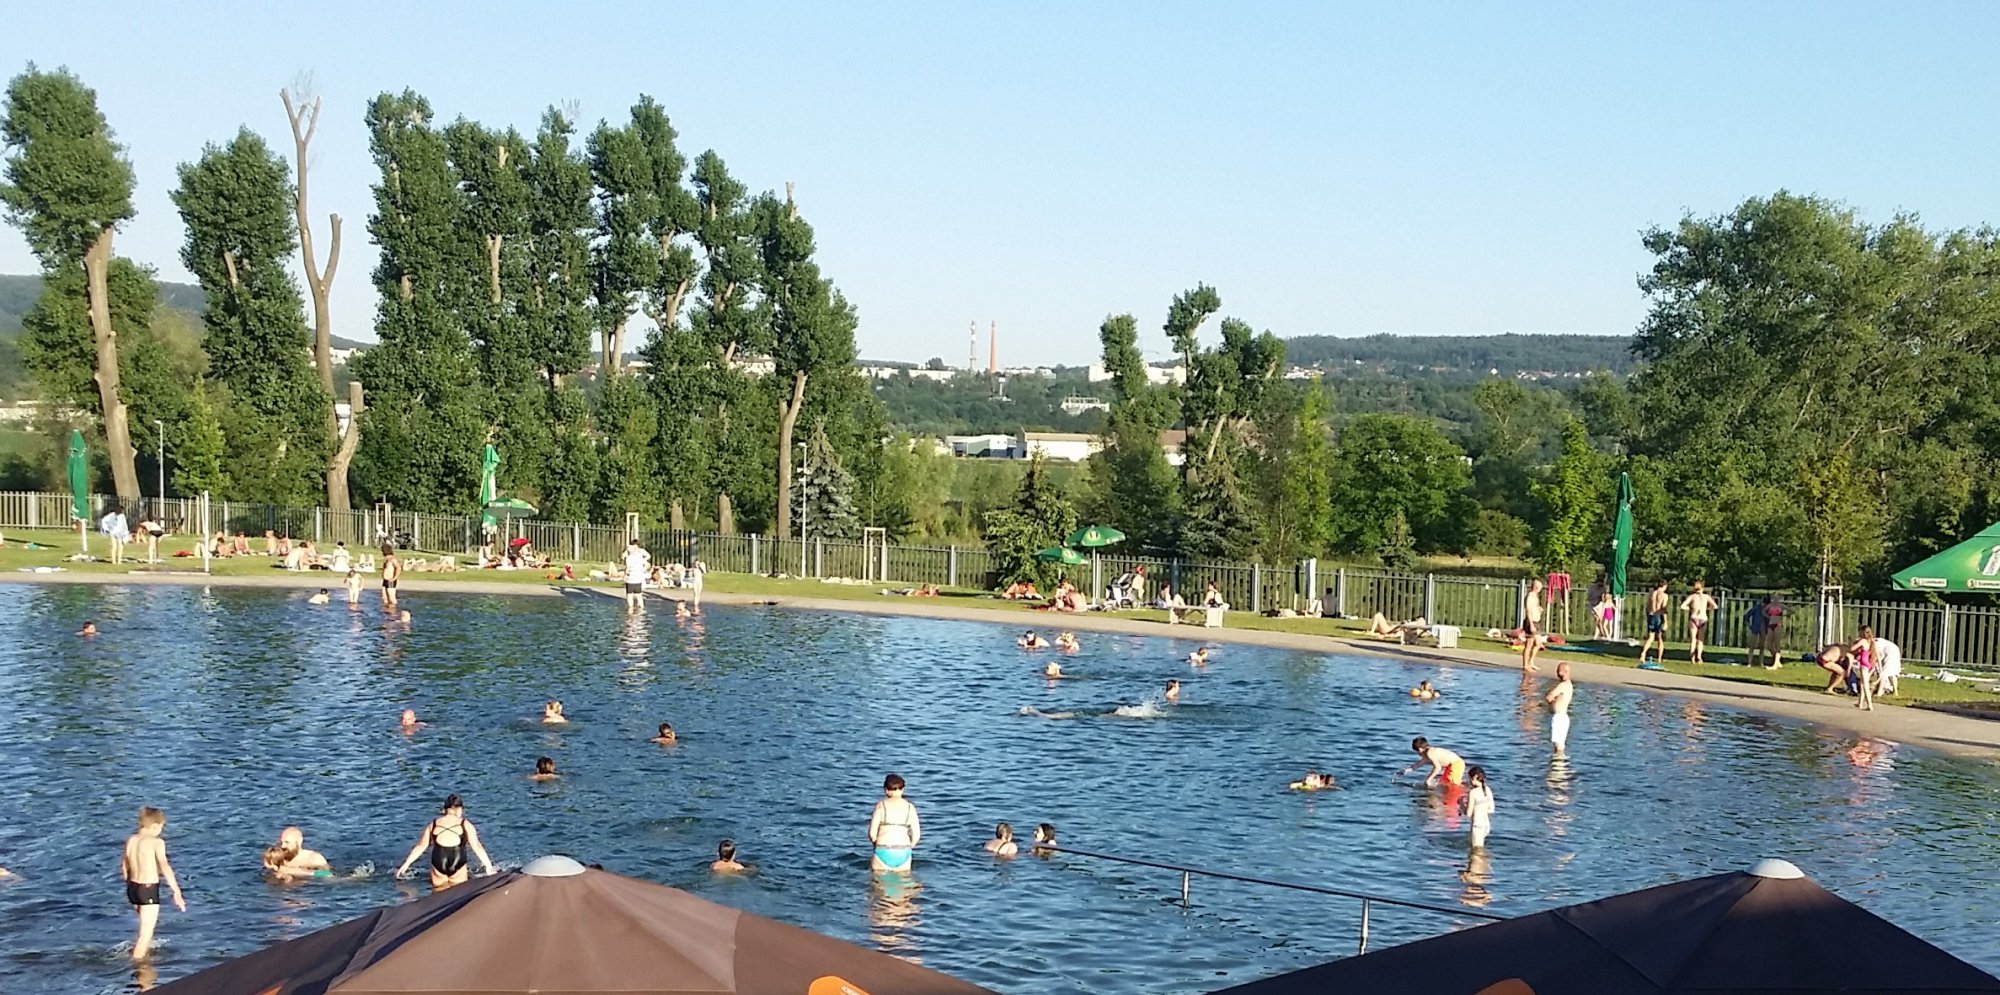 Nový plavecký stadion v Radotíně bude mít dětský bazének, vířivku i parní kabinu